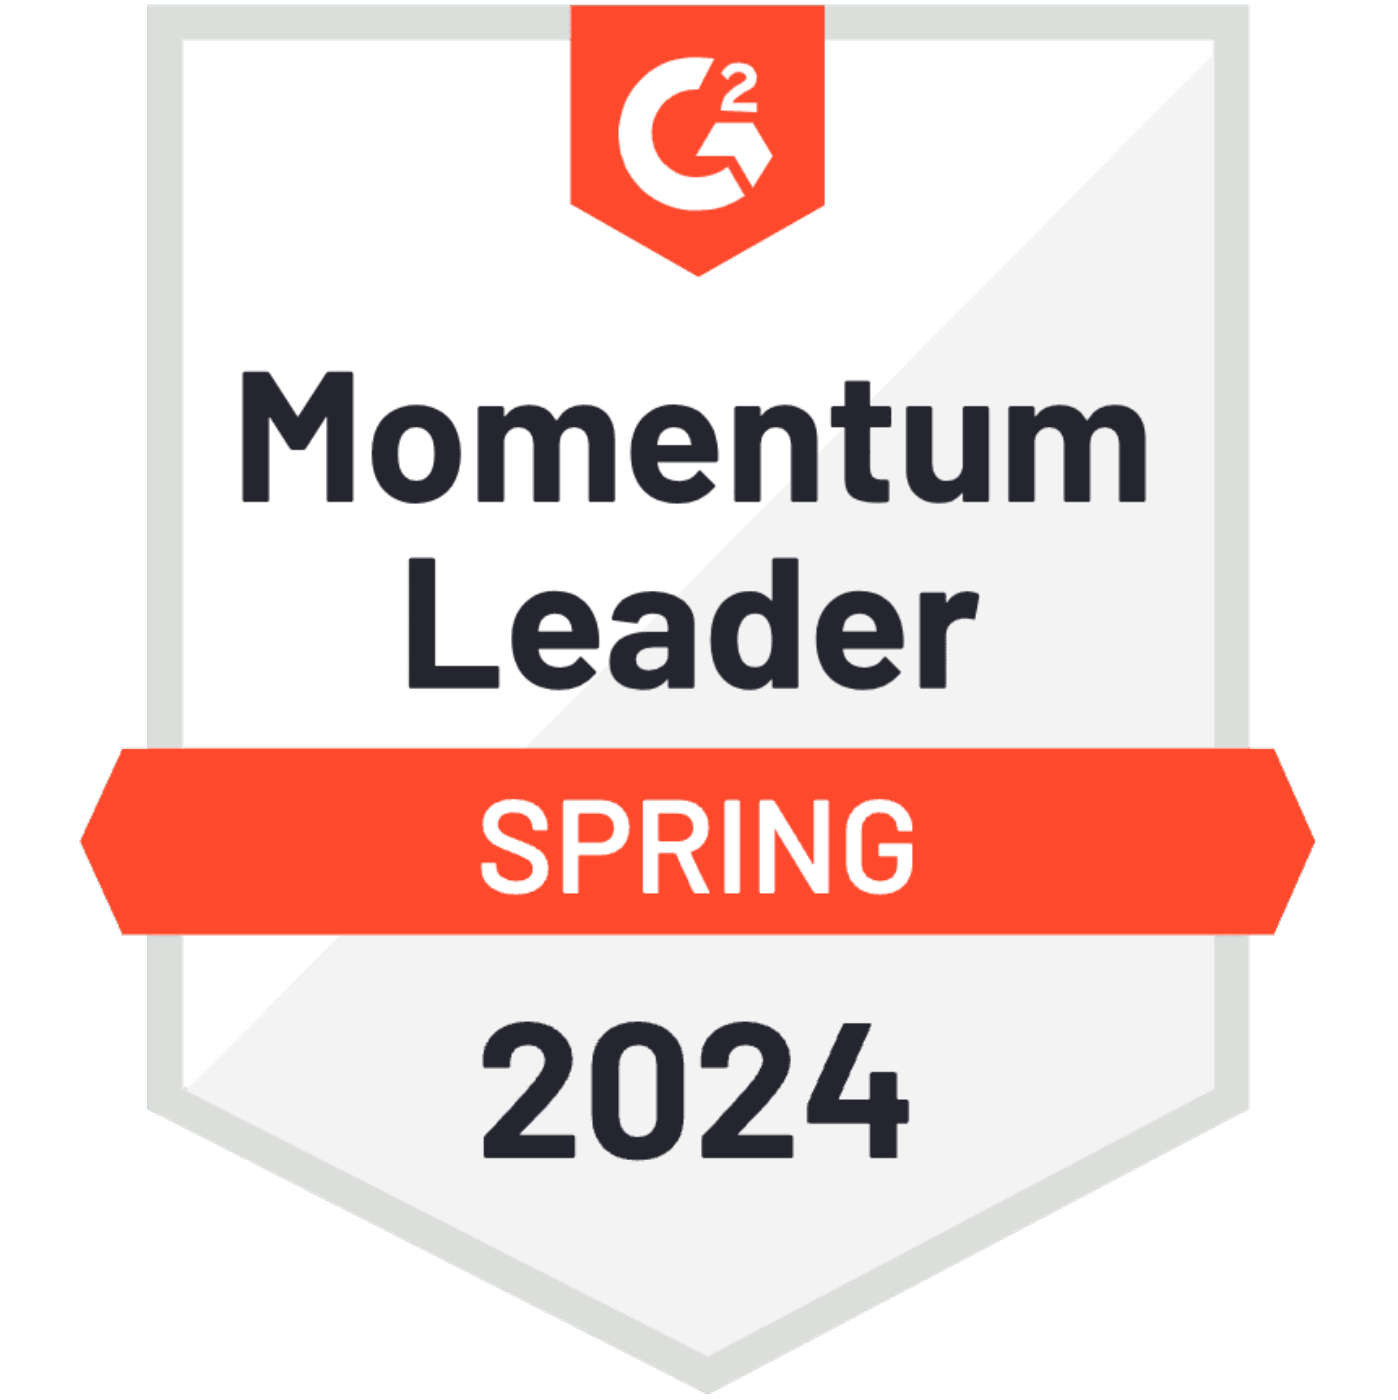 G2_Momentum_Leader_Spring_2024_600_600